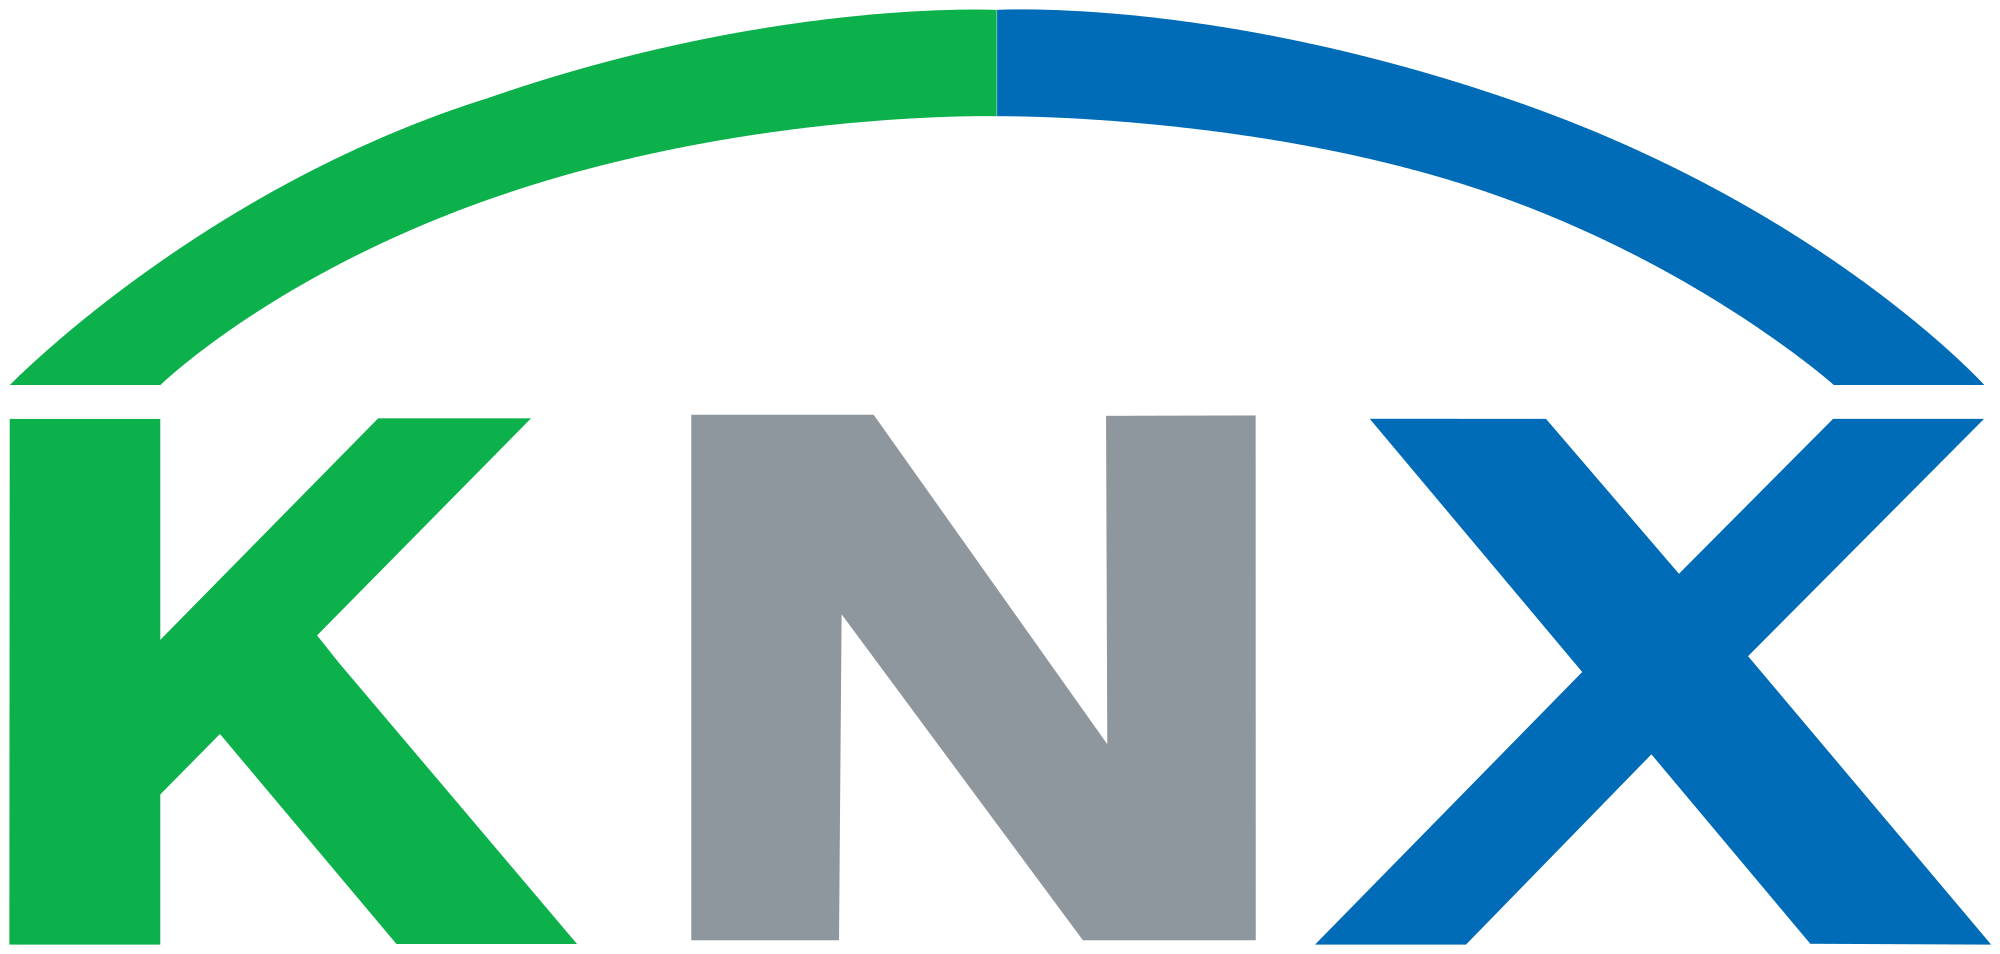 2000px-KNX_logo.svg